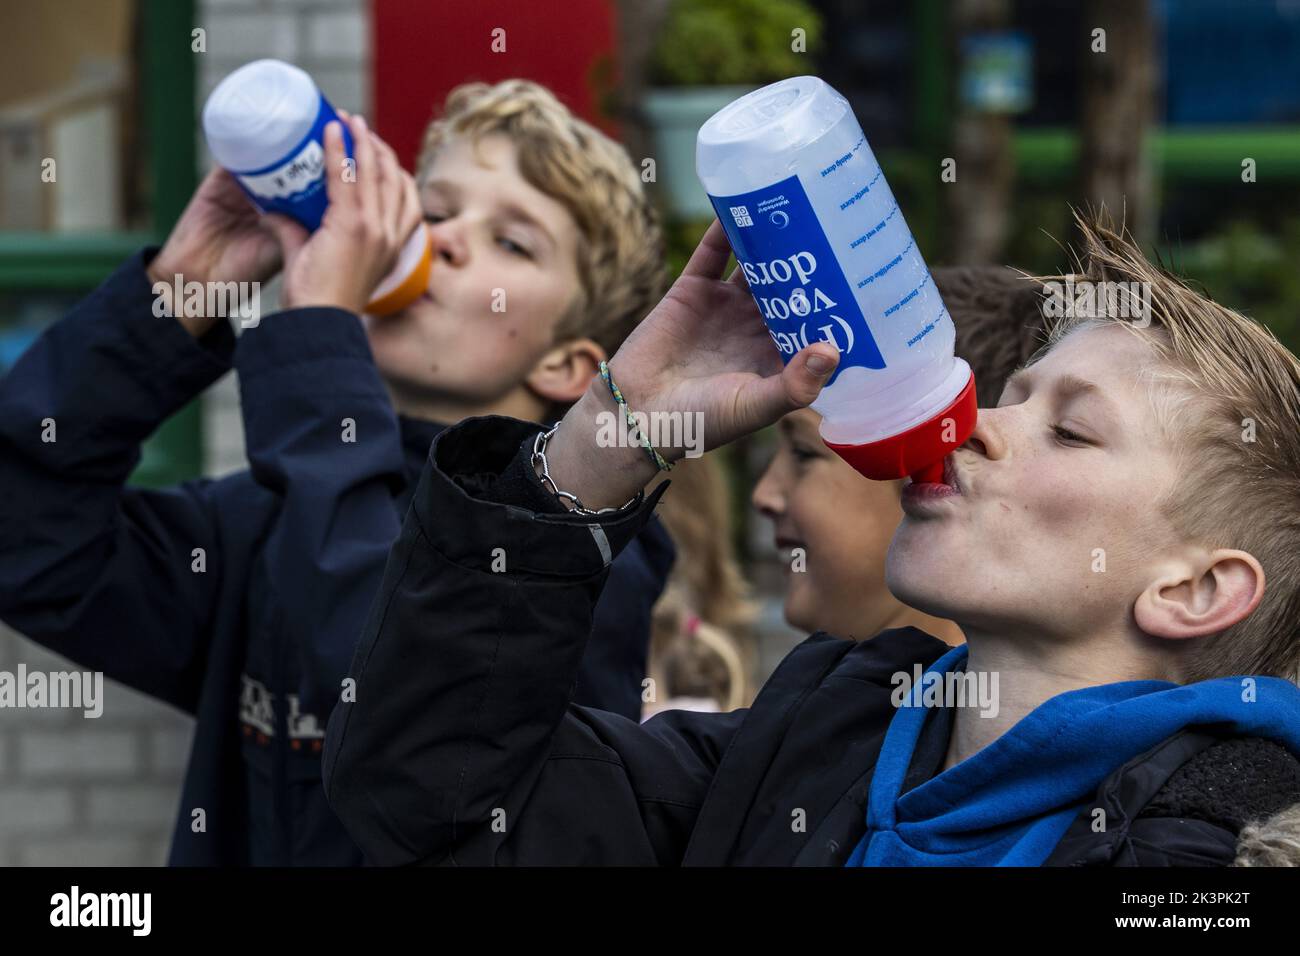 2022-09-28 09:18:32:19 GRONINGEN - i bambini bevono acqua potabile durante l'apertura del giorno nazionale dell'acqua di rubinetto. Questa giornata scolastica di circa 250.000 studenti della scuola primaria è dominata da una politica dell'acqua banale. ANP VINCENT JANNINK olanda fuori - belgio fuori Foto Stock